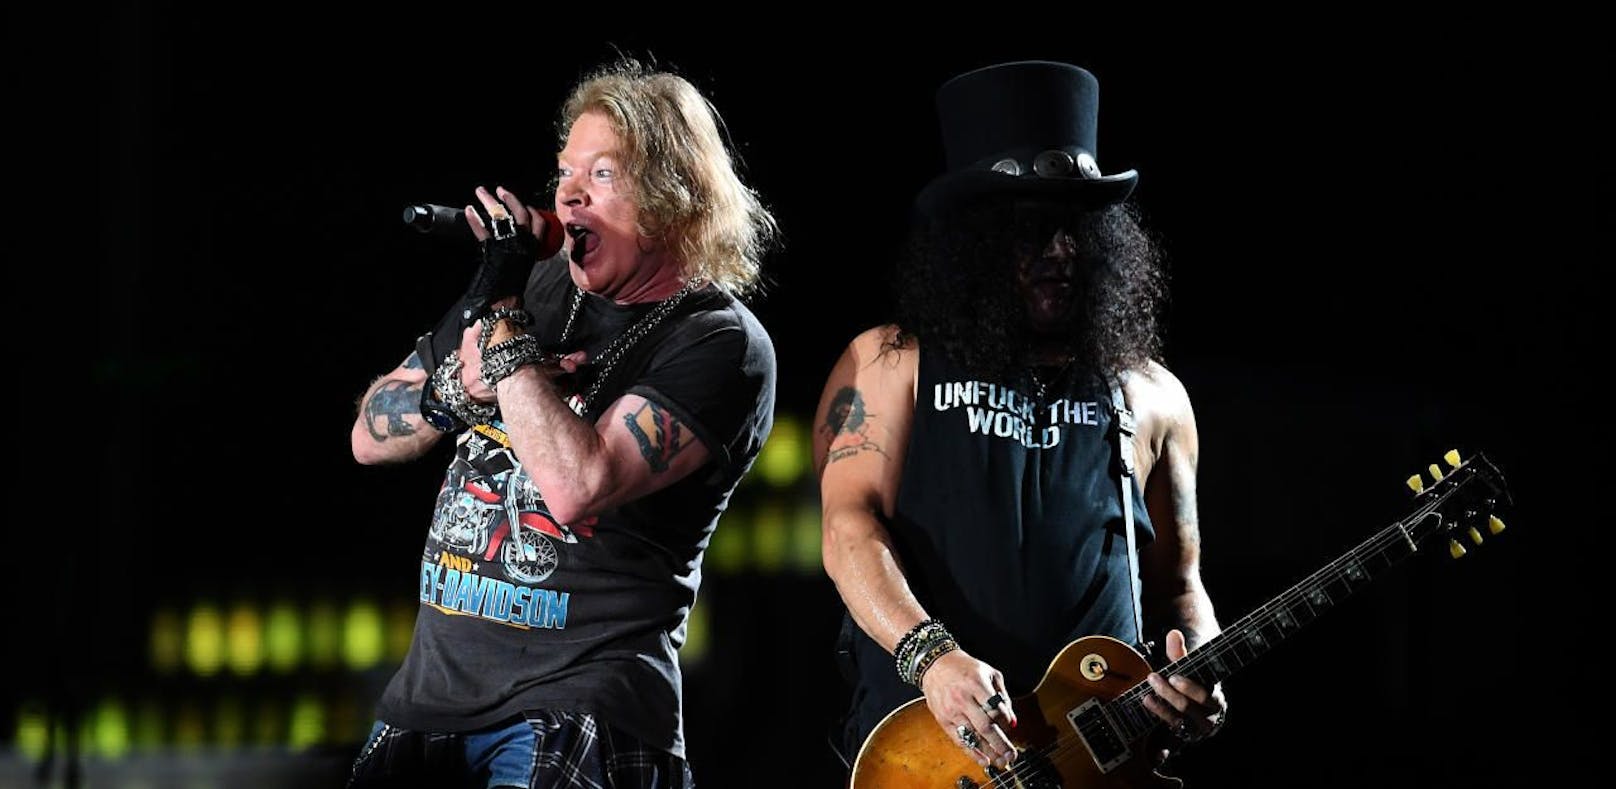 Guns N' Roses - So wird die Show der Rock-Legenden